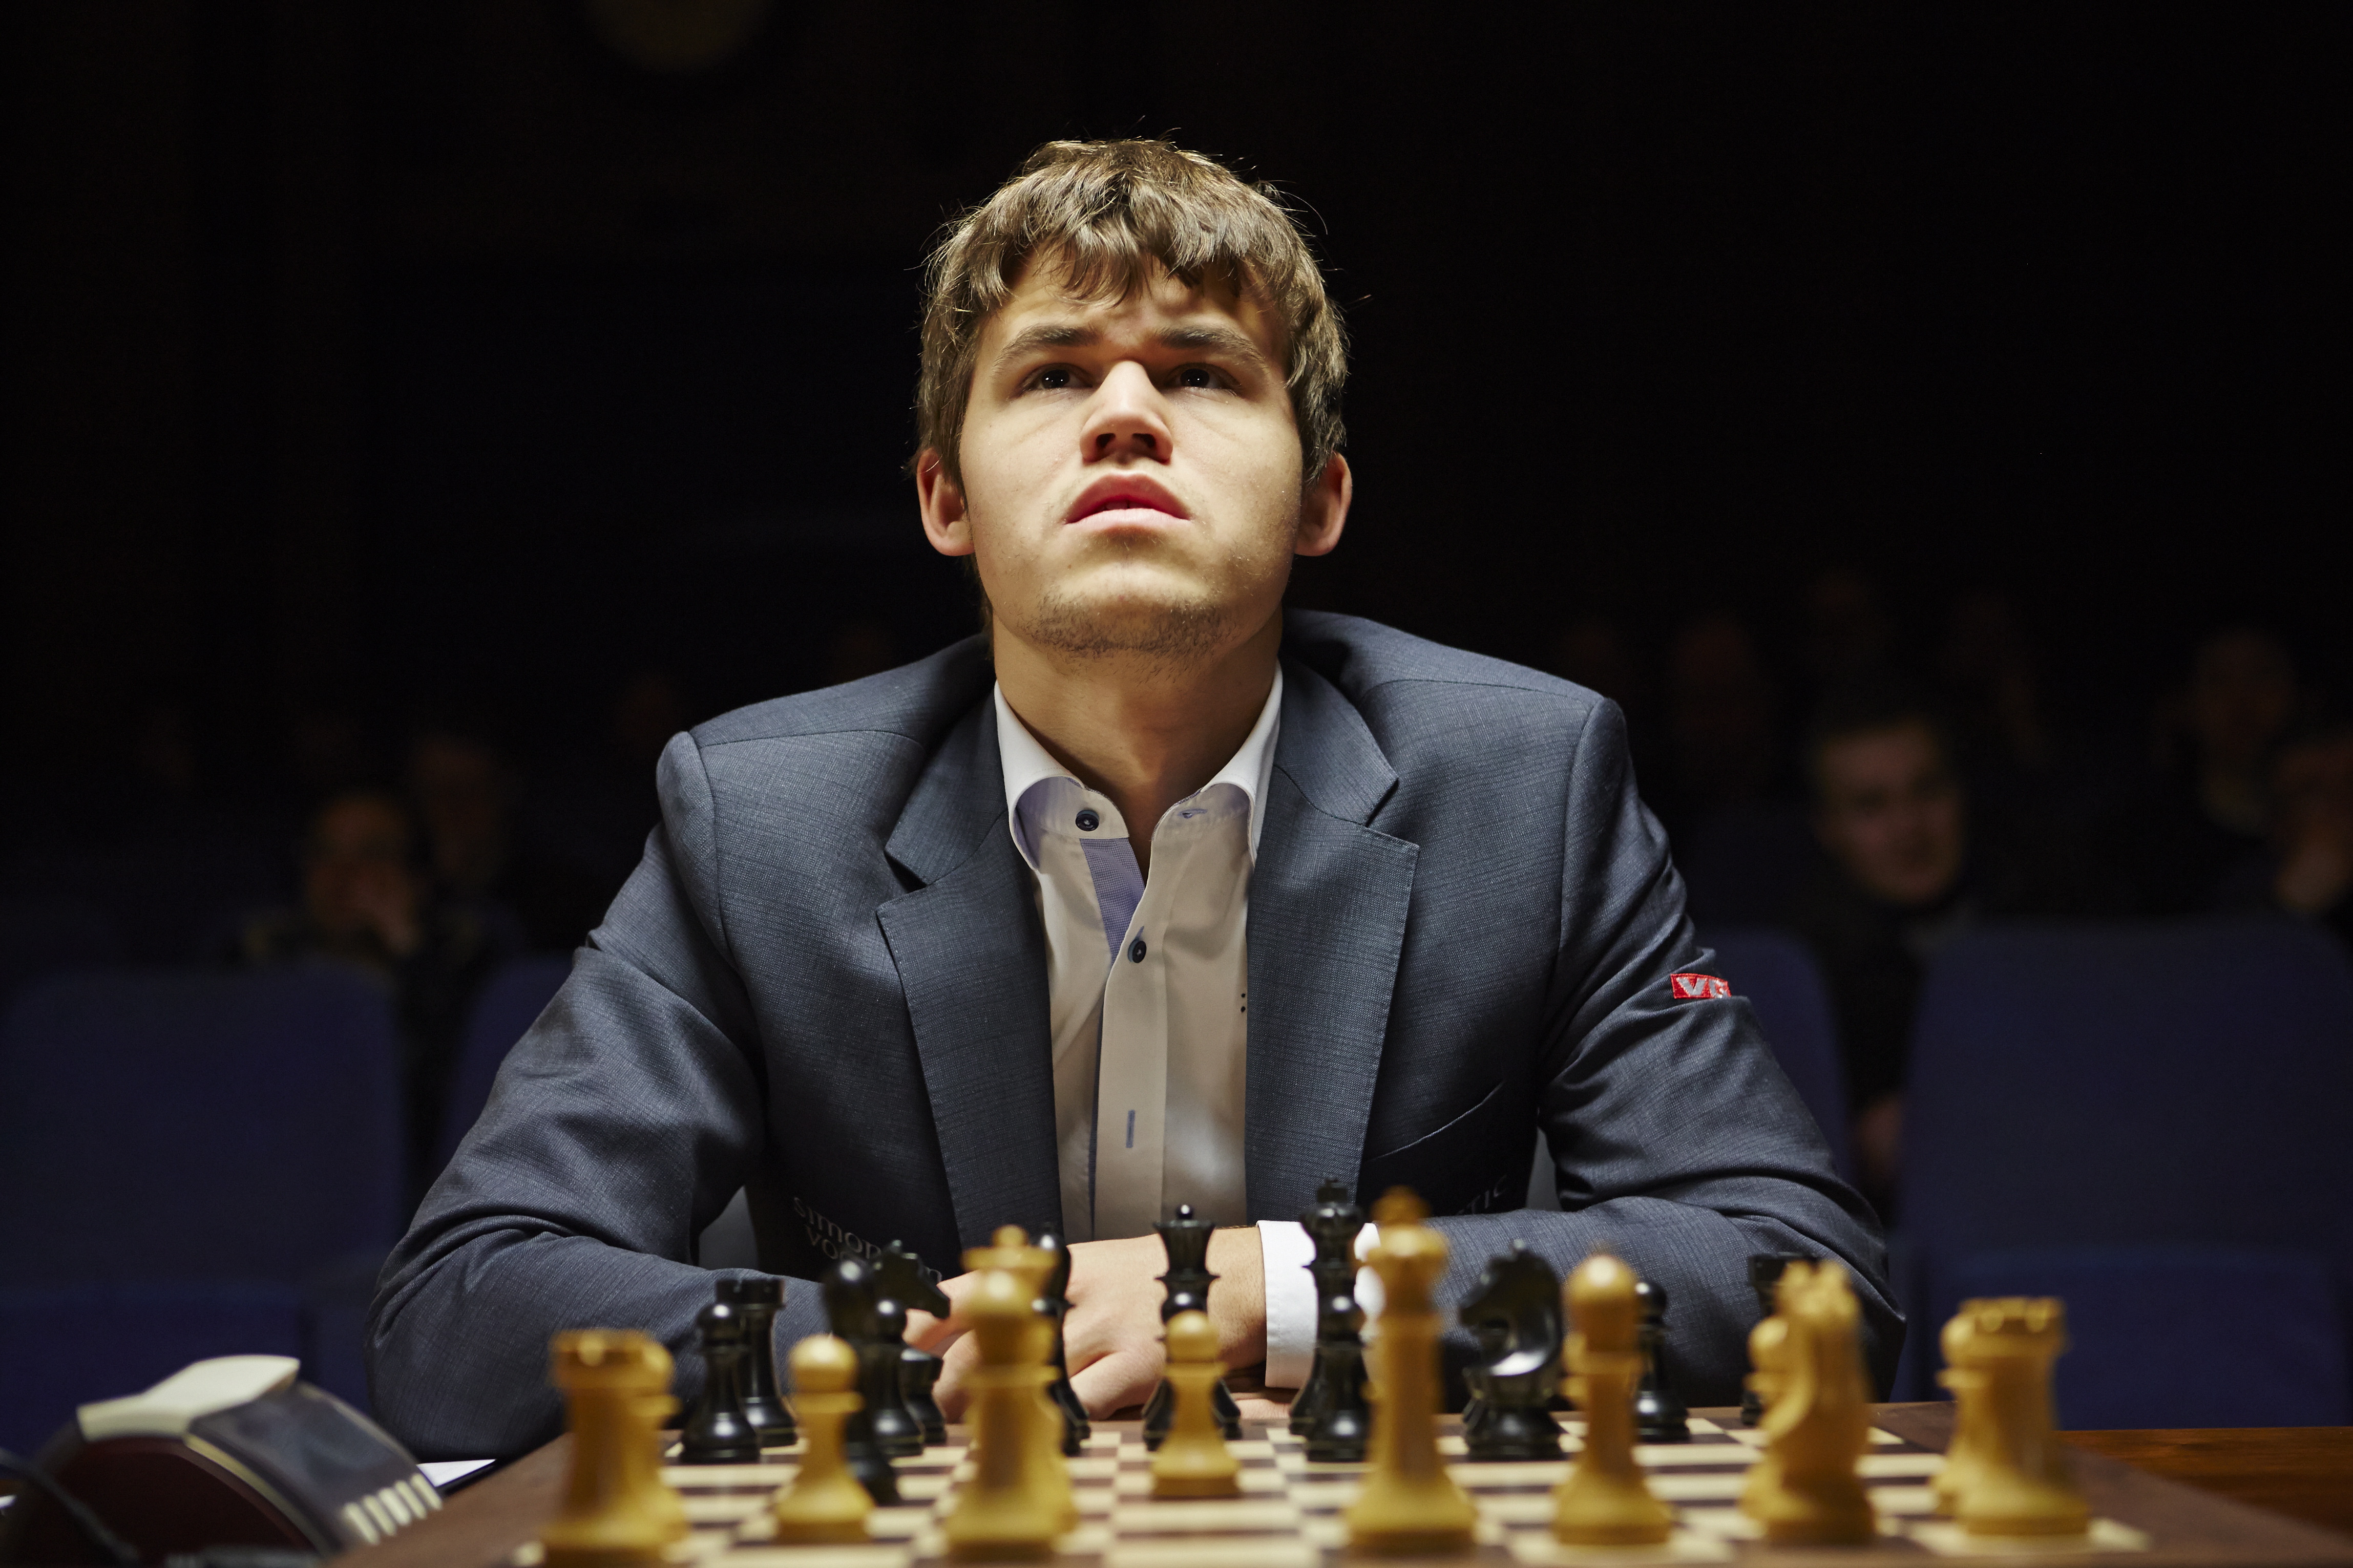 London, England 20130331. FIDE Chess Candidates Tournament 2013, London: Magnus Carlsen er igang med dagens sjakk match mot Teimour Radjabov fra Azerbaijan, i turneringens nest siste runde før det avsluttes i morgen. Foto: Morten Rakke / NTB scanpix